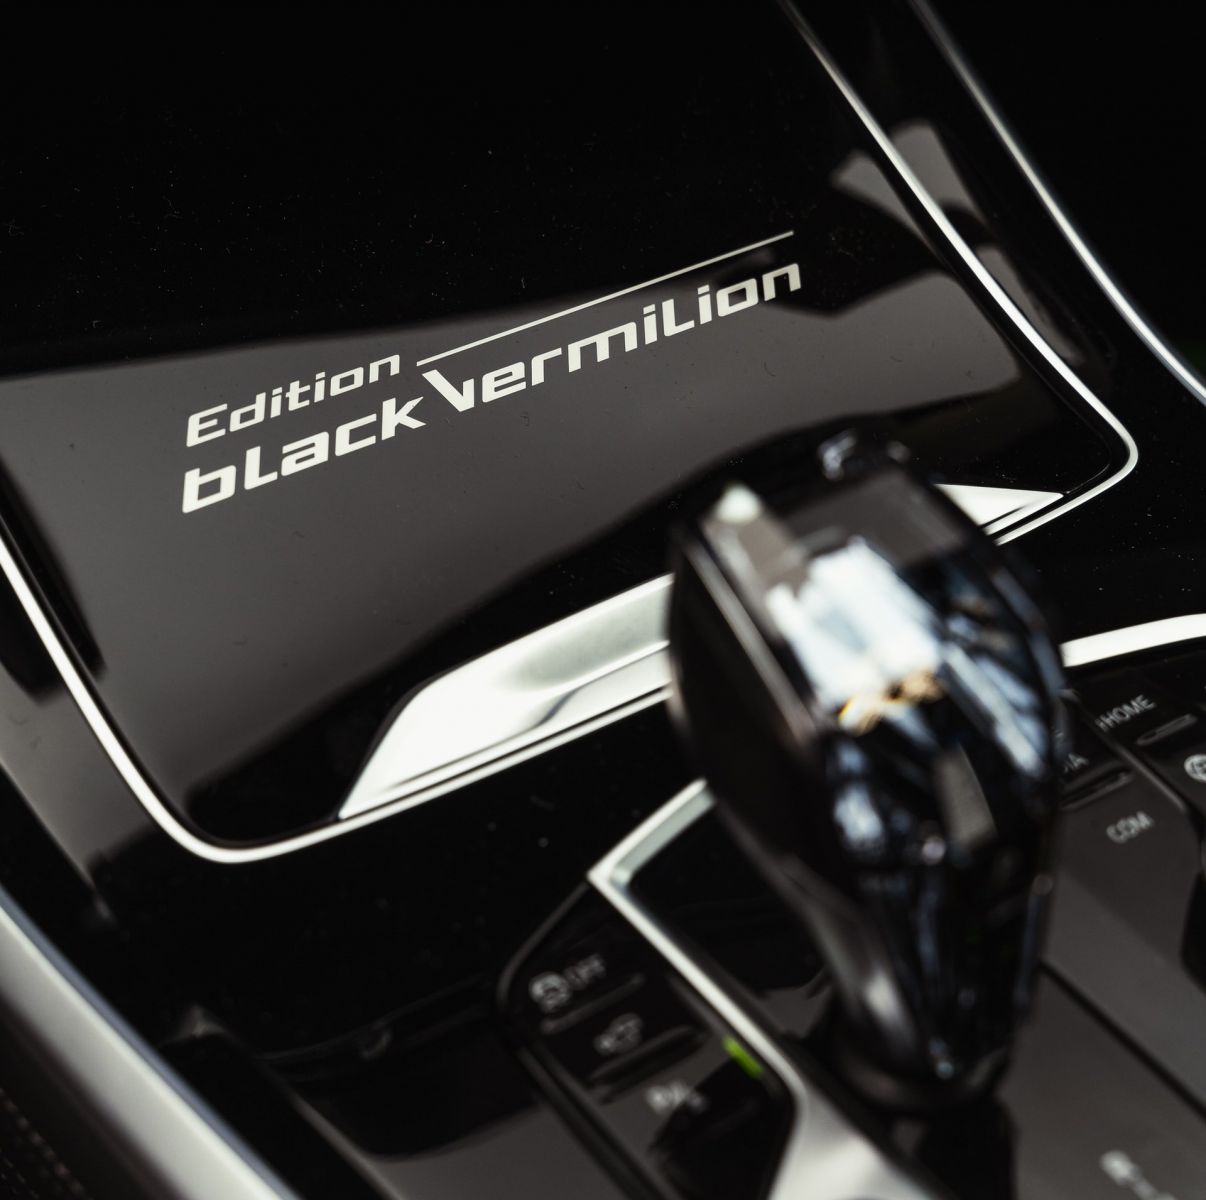 Ограниченная серия специального выпуска BMW X5 Black Vermilion Edition с уникальными характеристиками